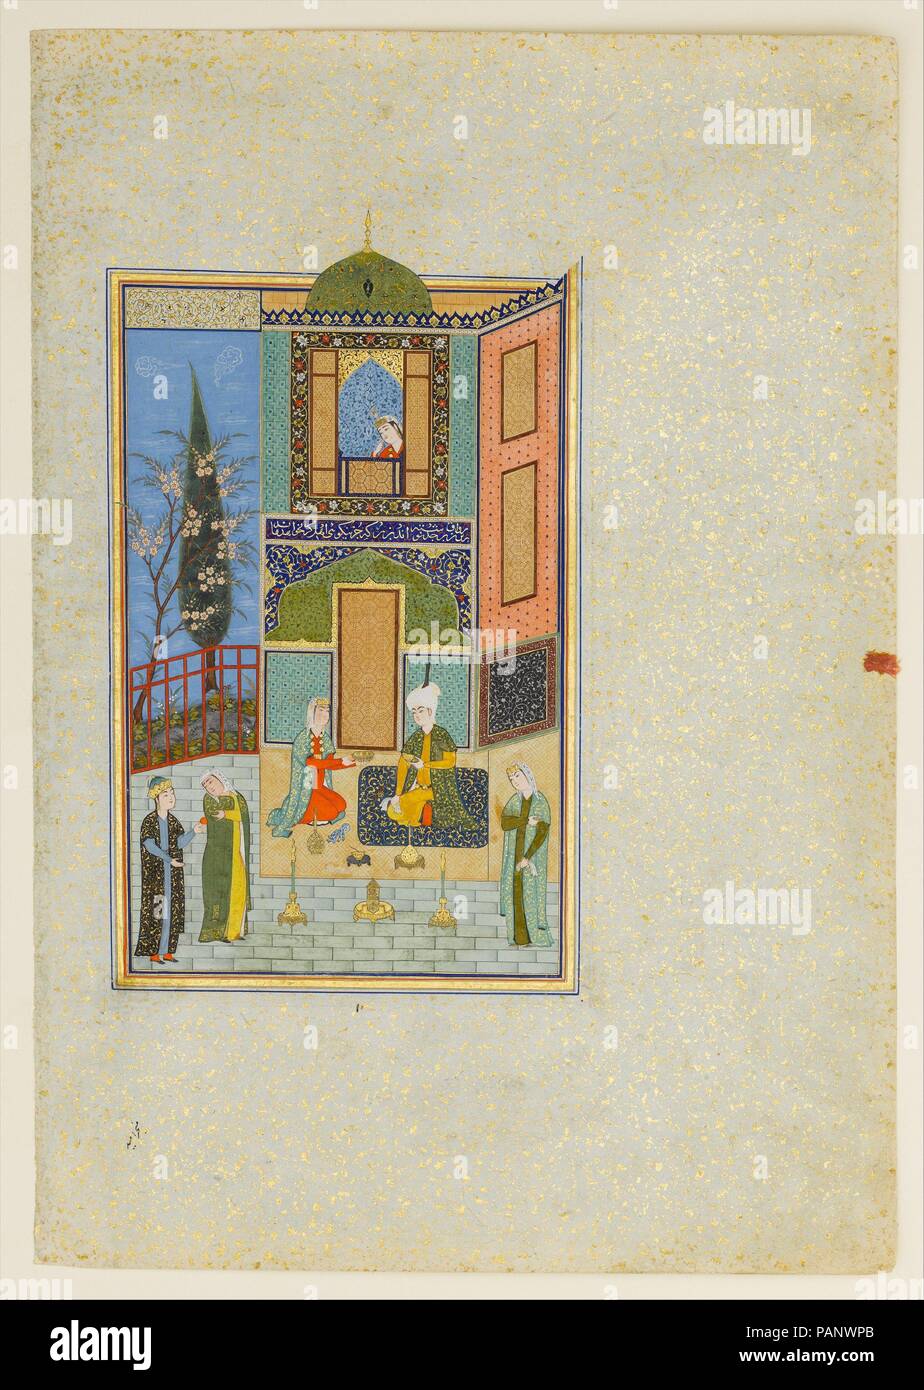 "Bahram Gur in der Green Palace am Montag", Folio aus einem khamsa (Quintett) von nizami. Autor: Nizami (Ilyas Abu Muhammad Nizam al-Din von Ganja) (vermutlich 1141-1217). Abmessungen: Malerei: H. 7 1/4 in. (18,4 cm) W. 5. (12,7 cm) Seite: H. 12 3/4 in. (32,4 cm) W. 8 5/8 in. (21,9 cm) Matte: H.19 cm. (48,9 cm) W. 14 1/4 in. (36,2 cm). Datum: A.H. 931 / A.D. 1524-25. Die Haft Paikar (Sieben Porträts) ist eine der fünf Gedichte der khamsa von nizami. Die Poesie ist mystisch und veranschaulichen die Vorherrschaft der göttlichen Liebe über die irdischen Freuden. In der Geschichte, Bahram Gur heiratet sieben Prinzessinnen Stockfoto